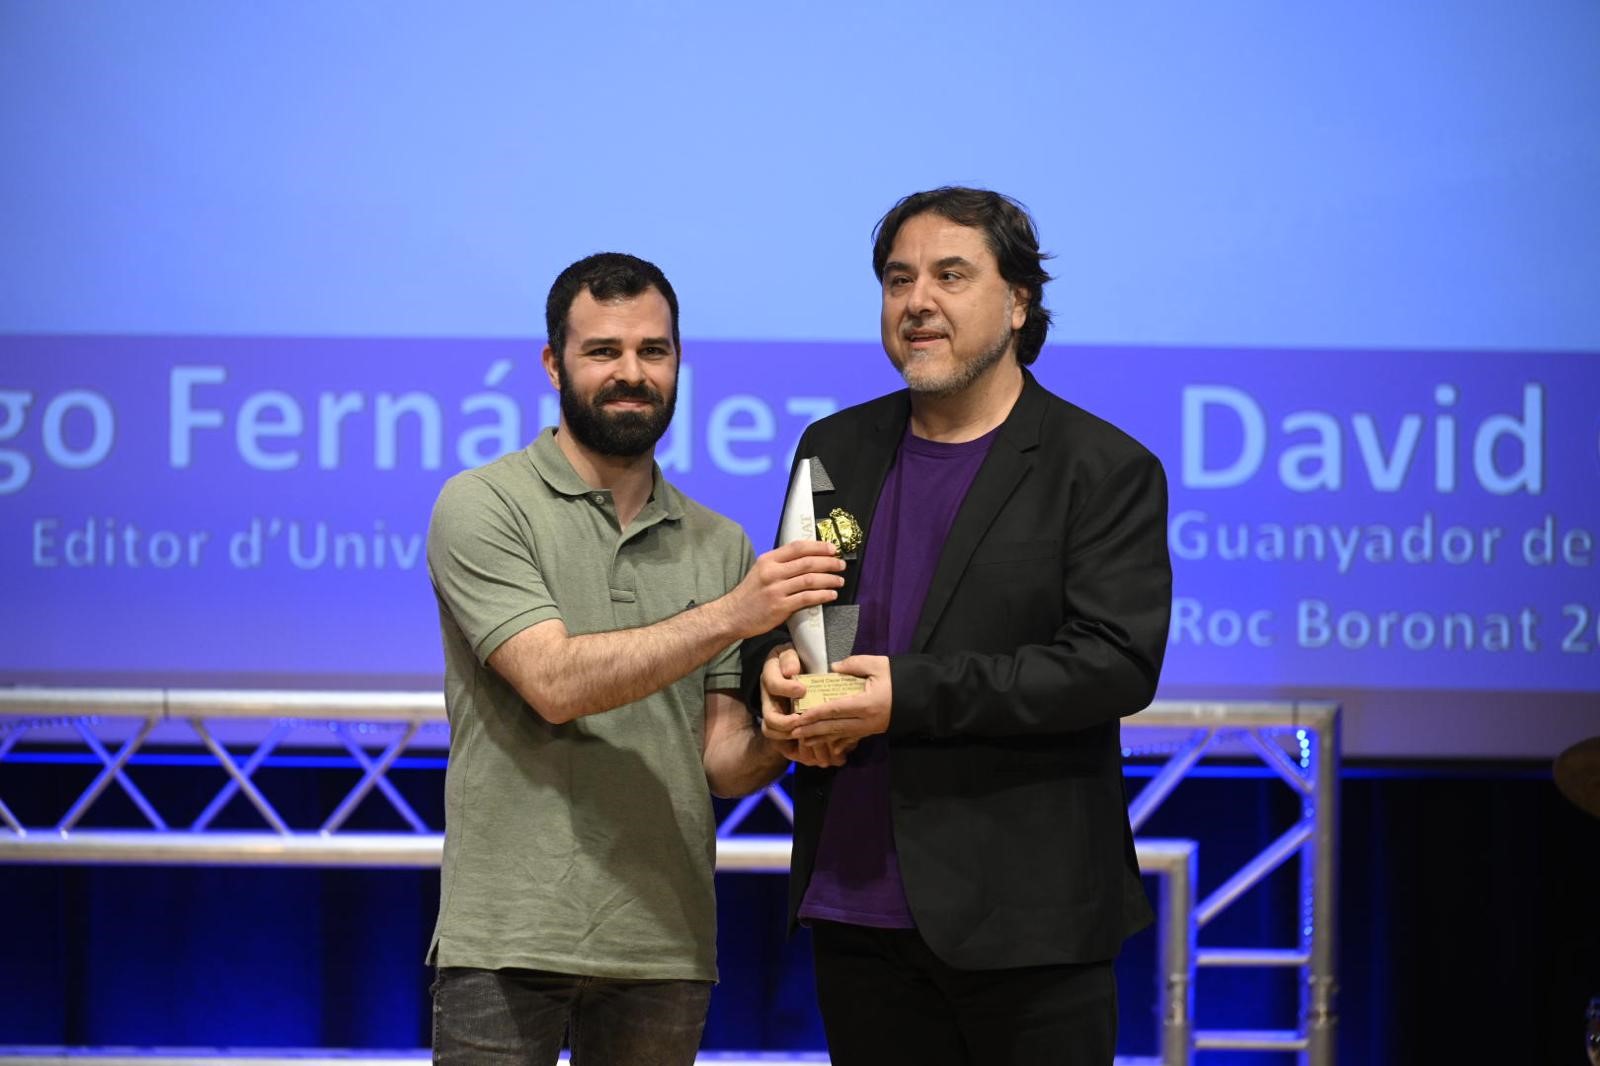  David Ciscar ha guanyat en l’apartat de prosa amb l’obra 'Perseguit'. Li dona el premi Iago Fernández, editor d'Univers.